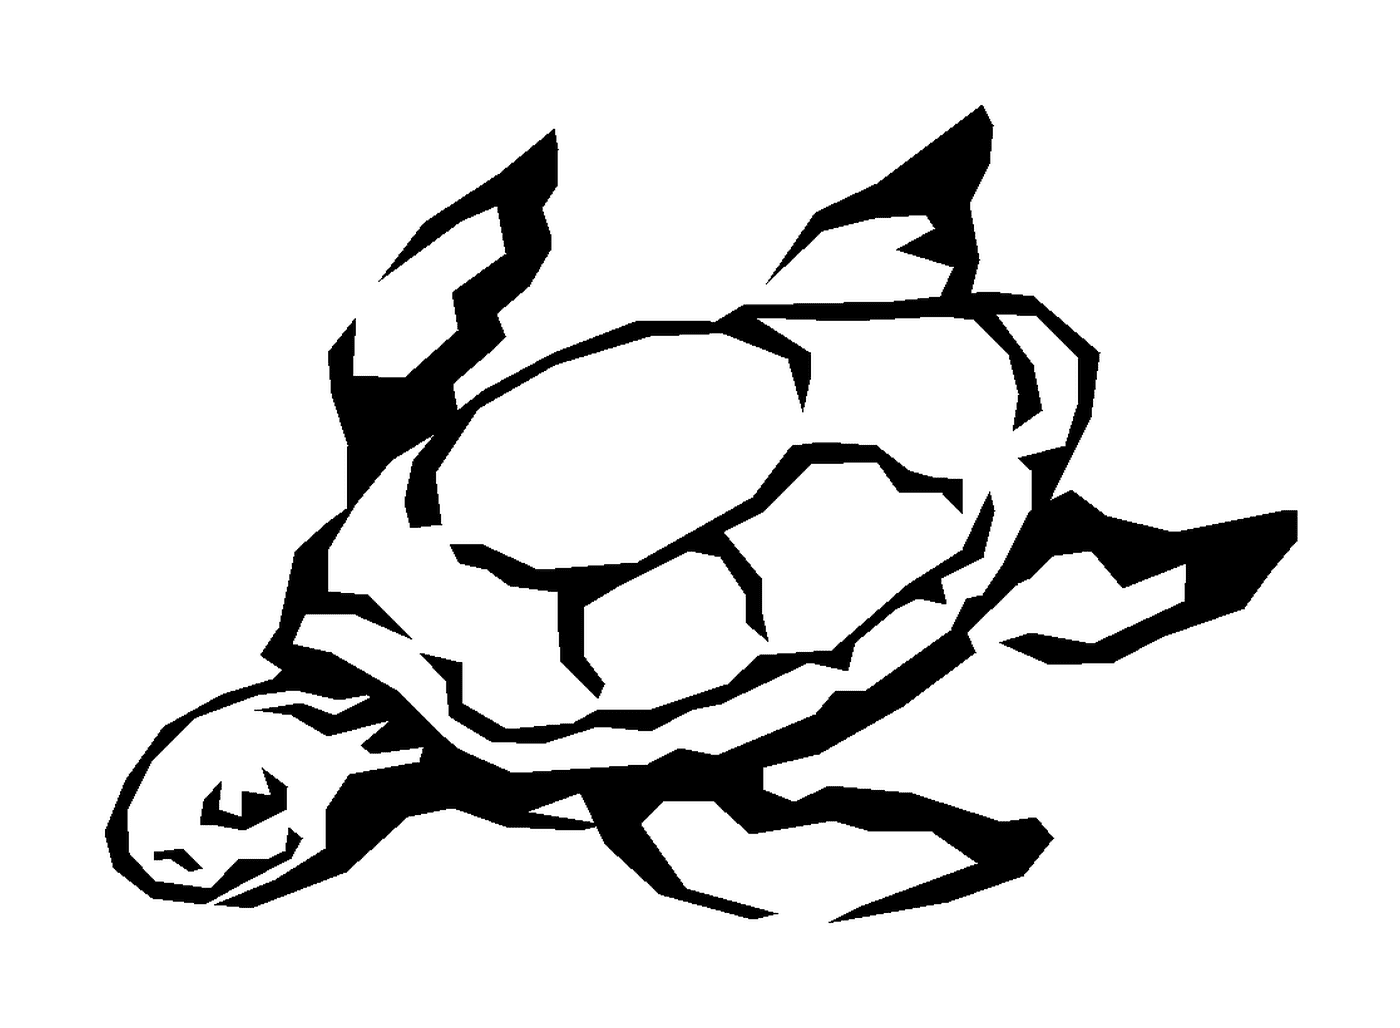   Une tortue marine 